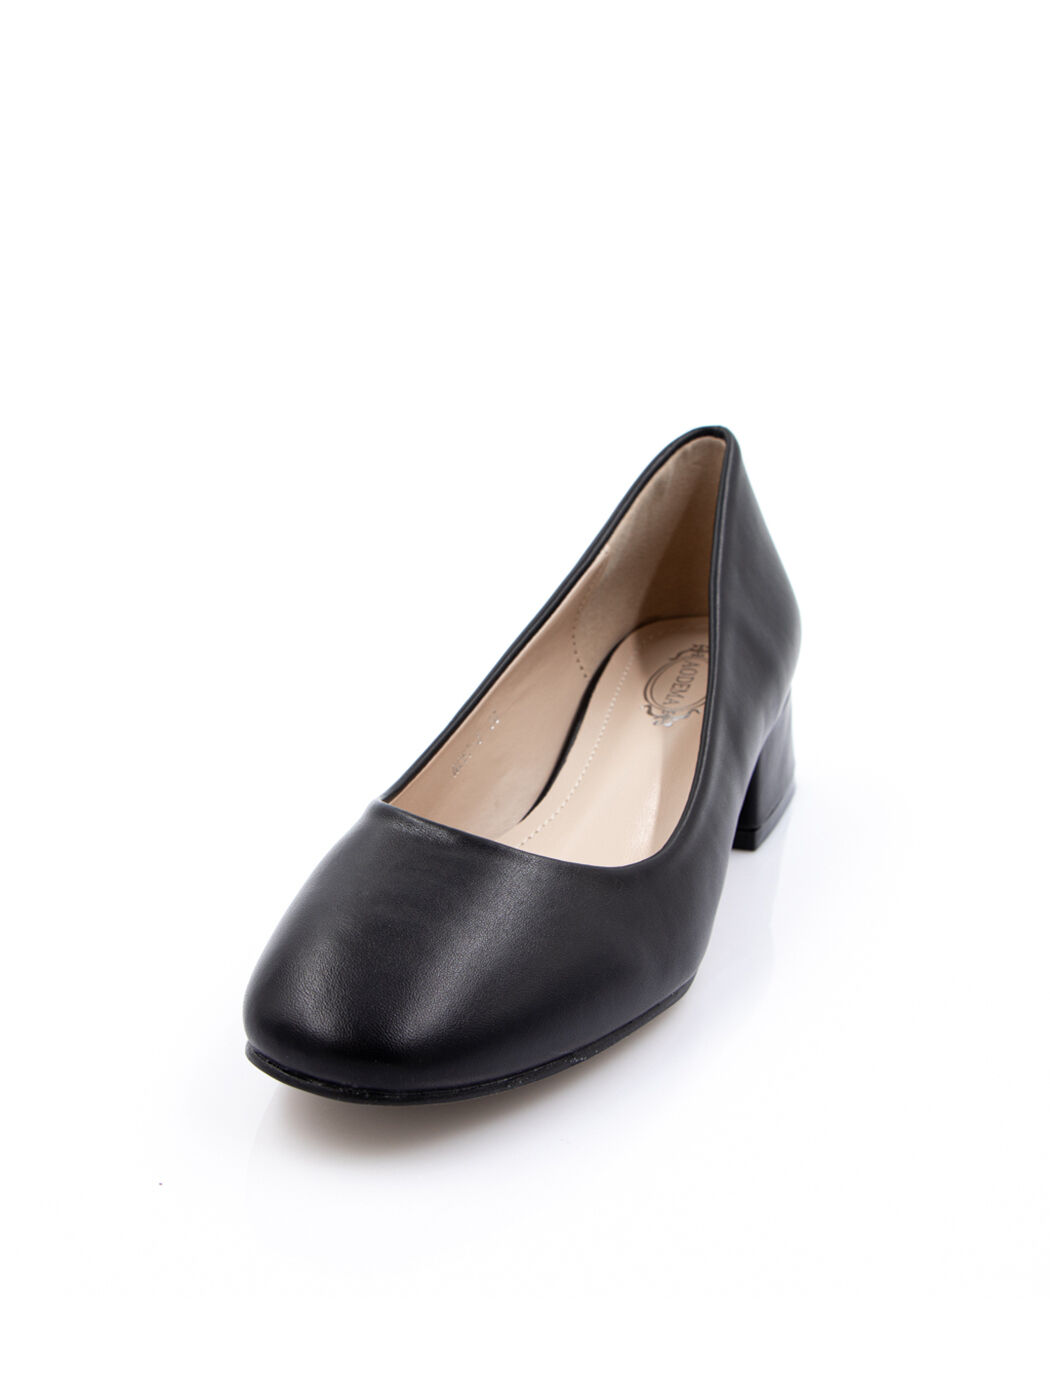 Туфли женские черные экокожа каблук устойчивый демисезон от производителя 5M вид 2